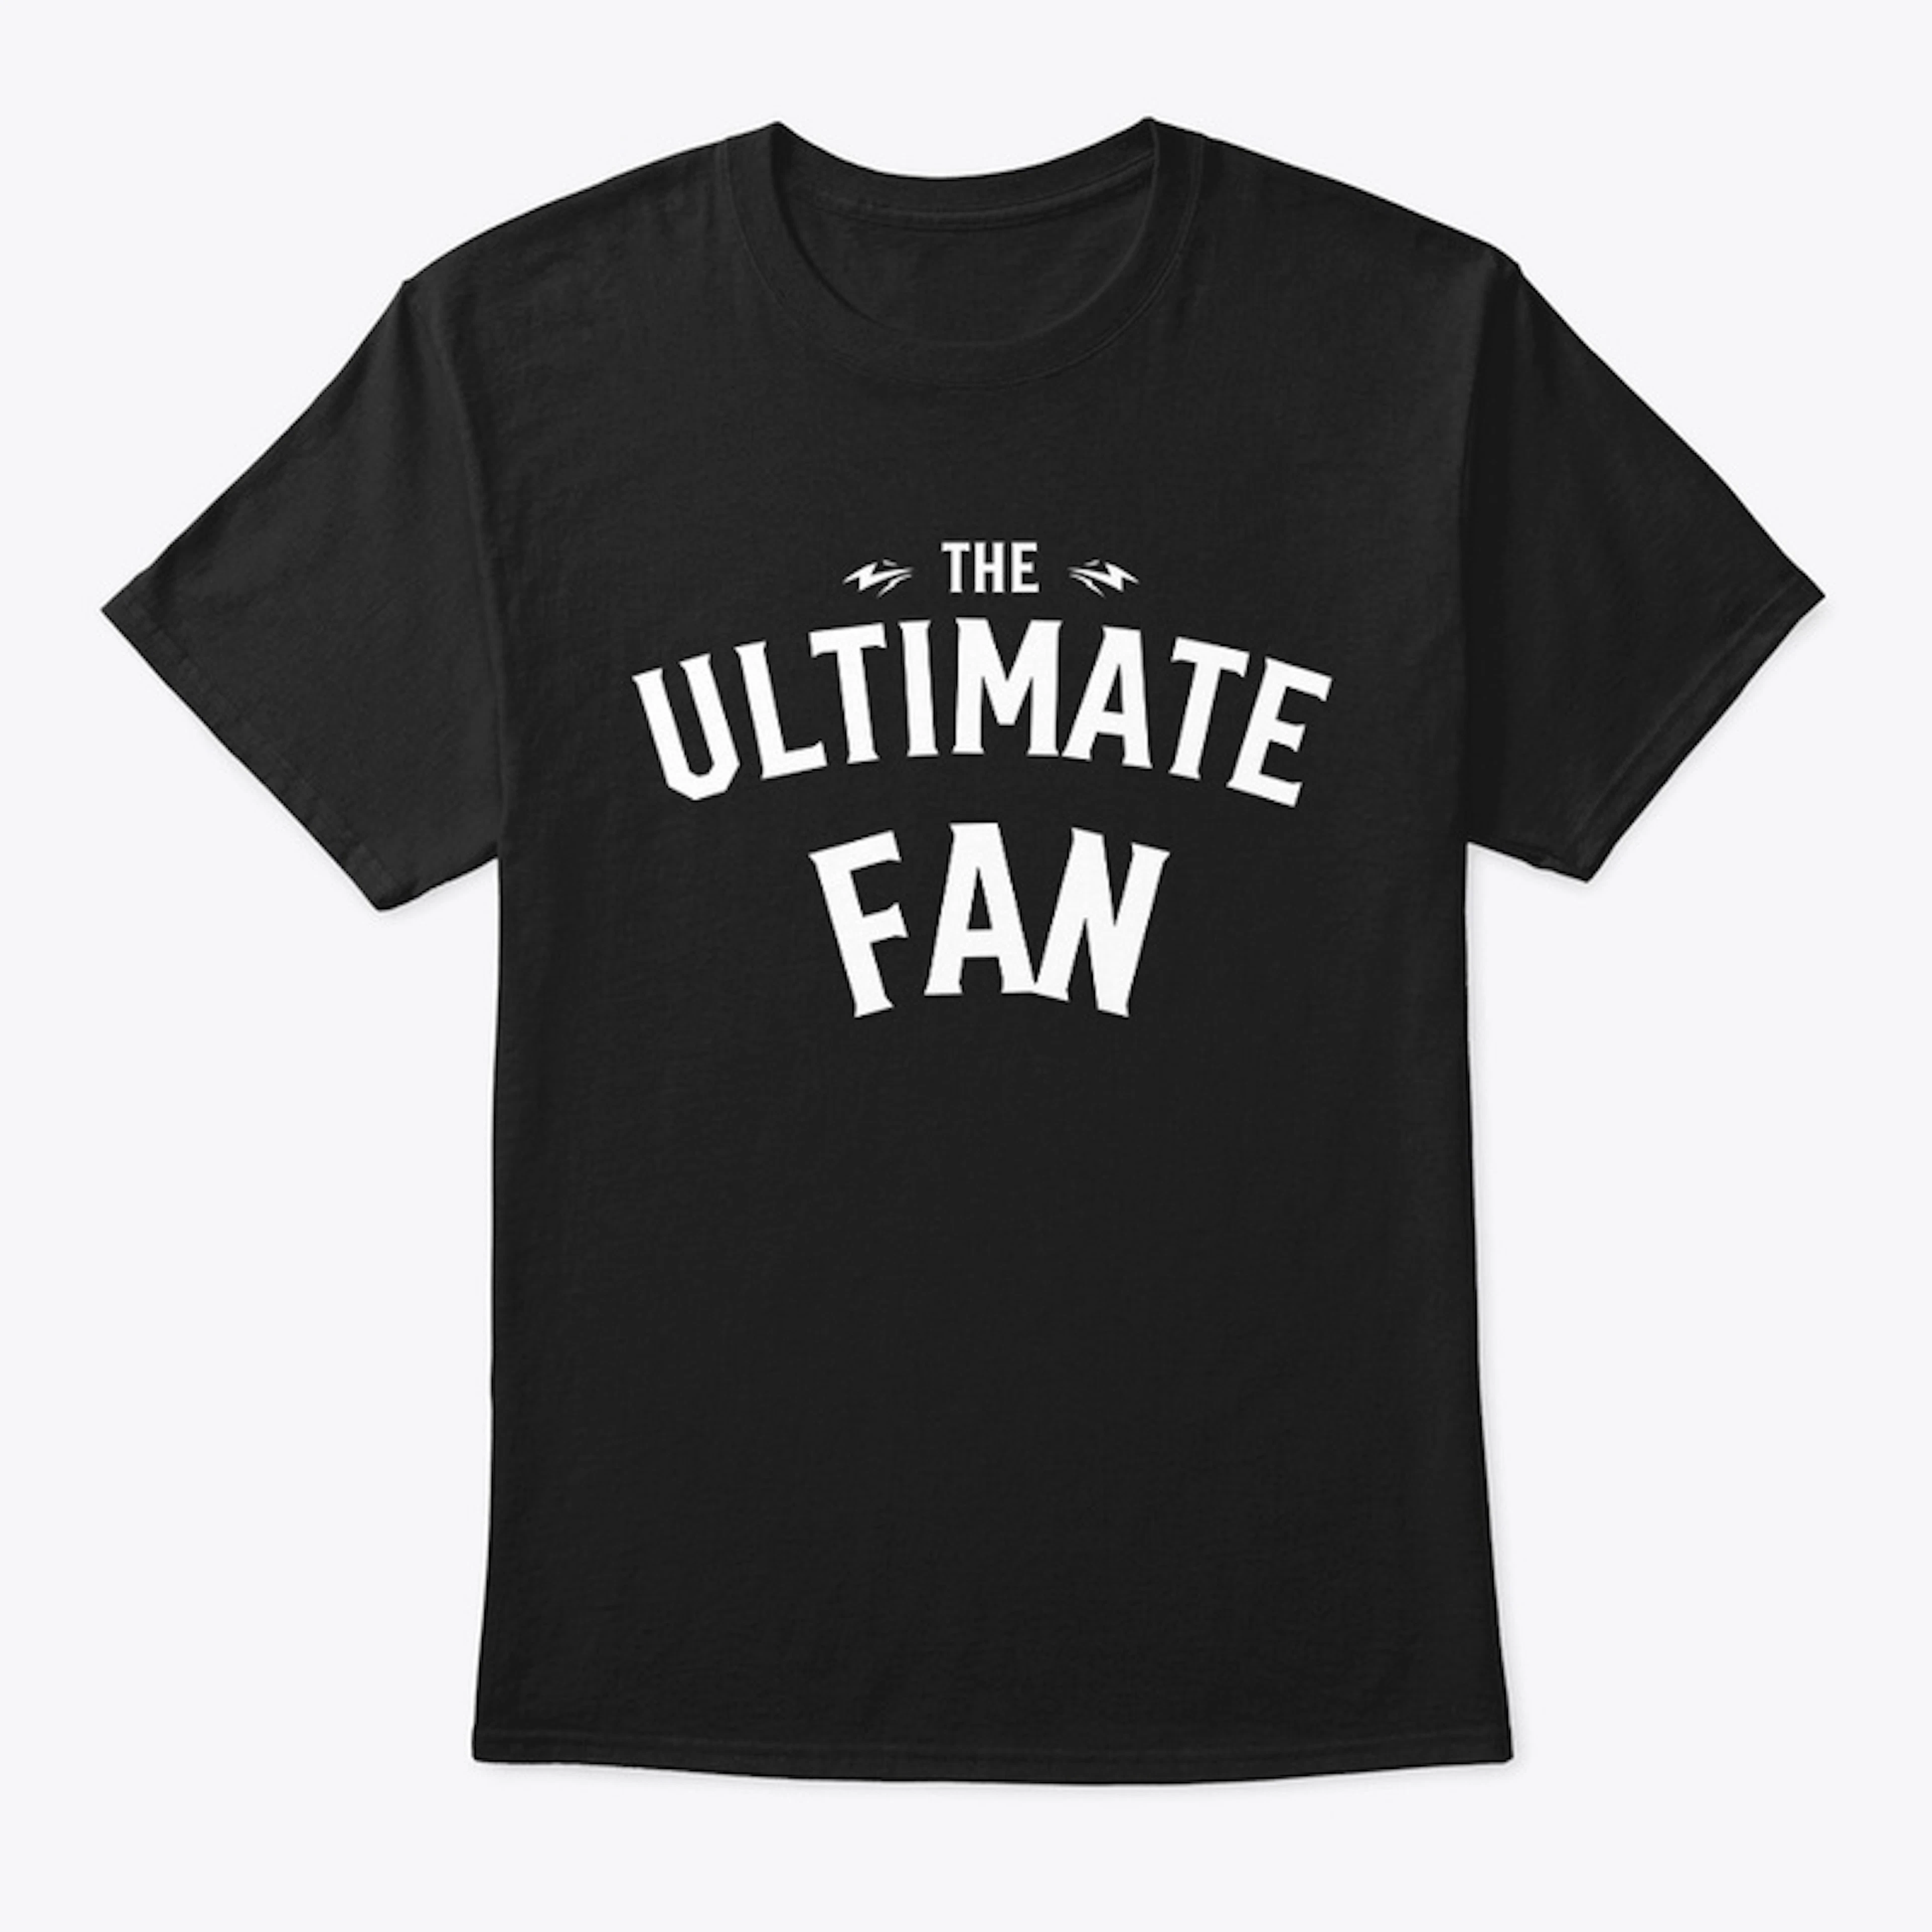 The Ultimate Fan